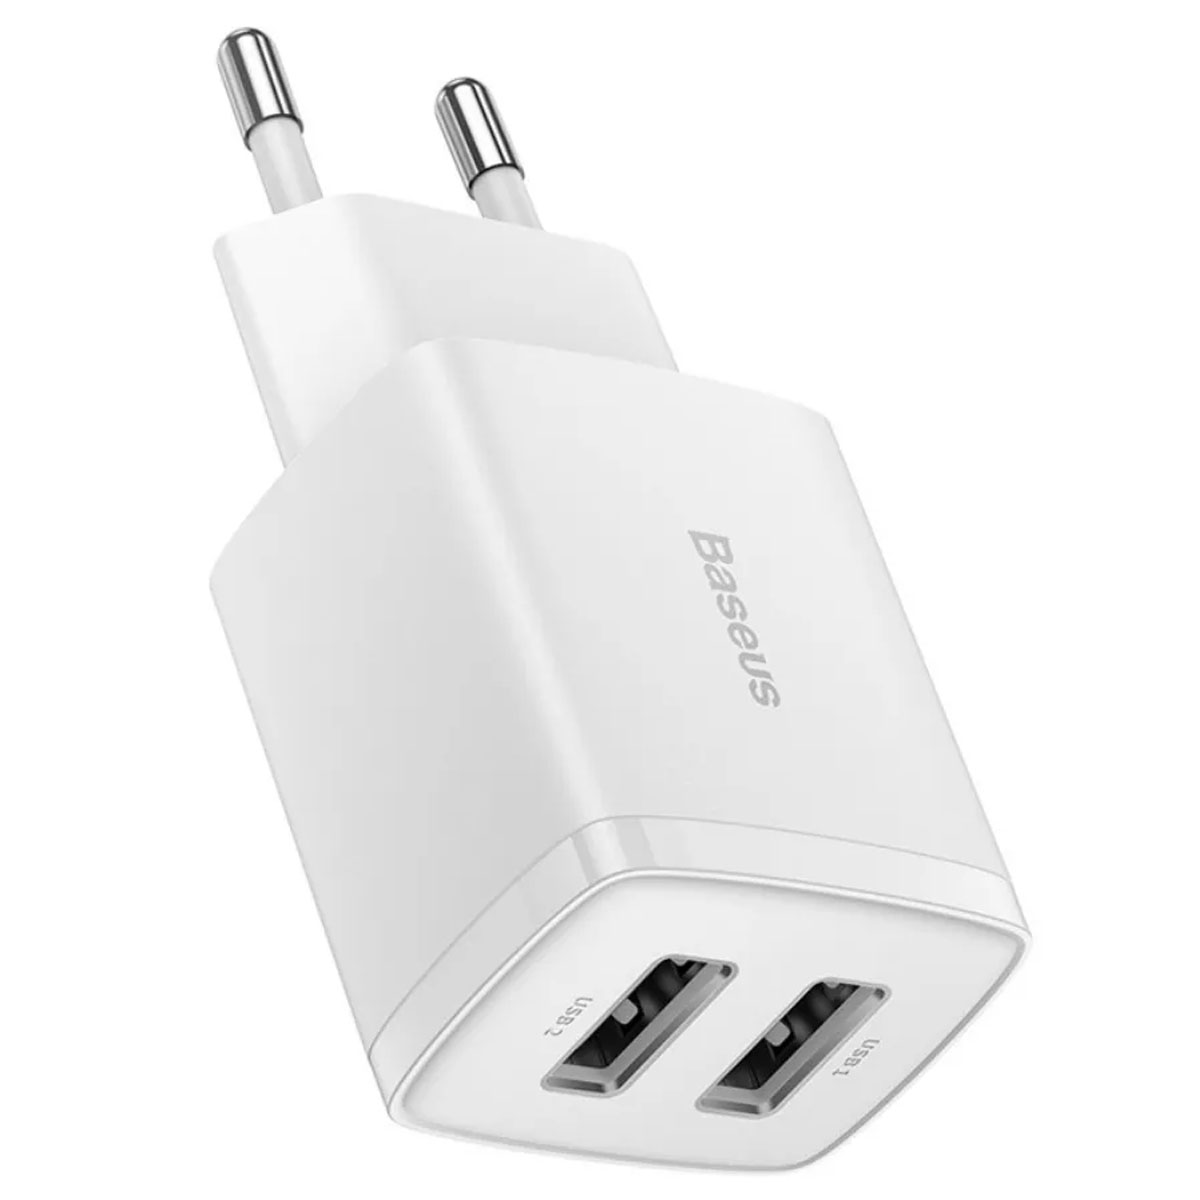 СЗУ (Сетевое зарядное устройство) BASEUS Compact Charger 2U (CCXJ010202), 10.5W, 2 USB, цвет белый